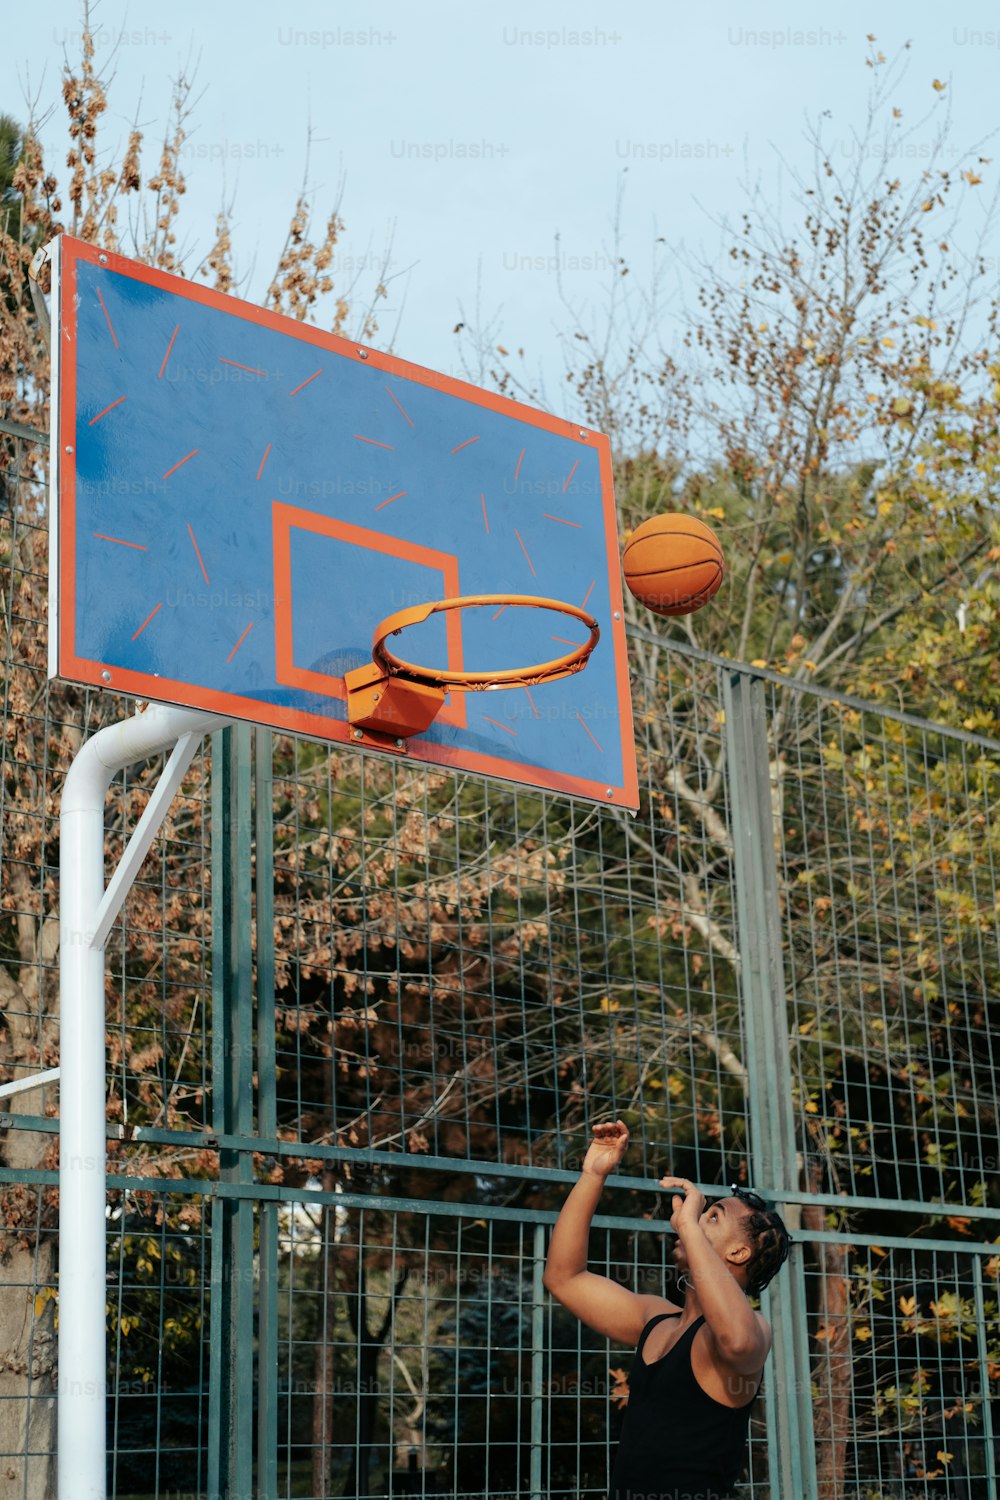 Un jeune homme joue au basketball sur un terrain